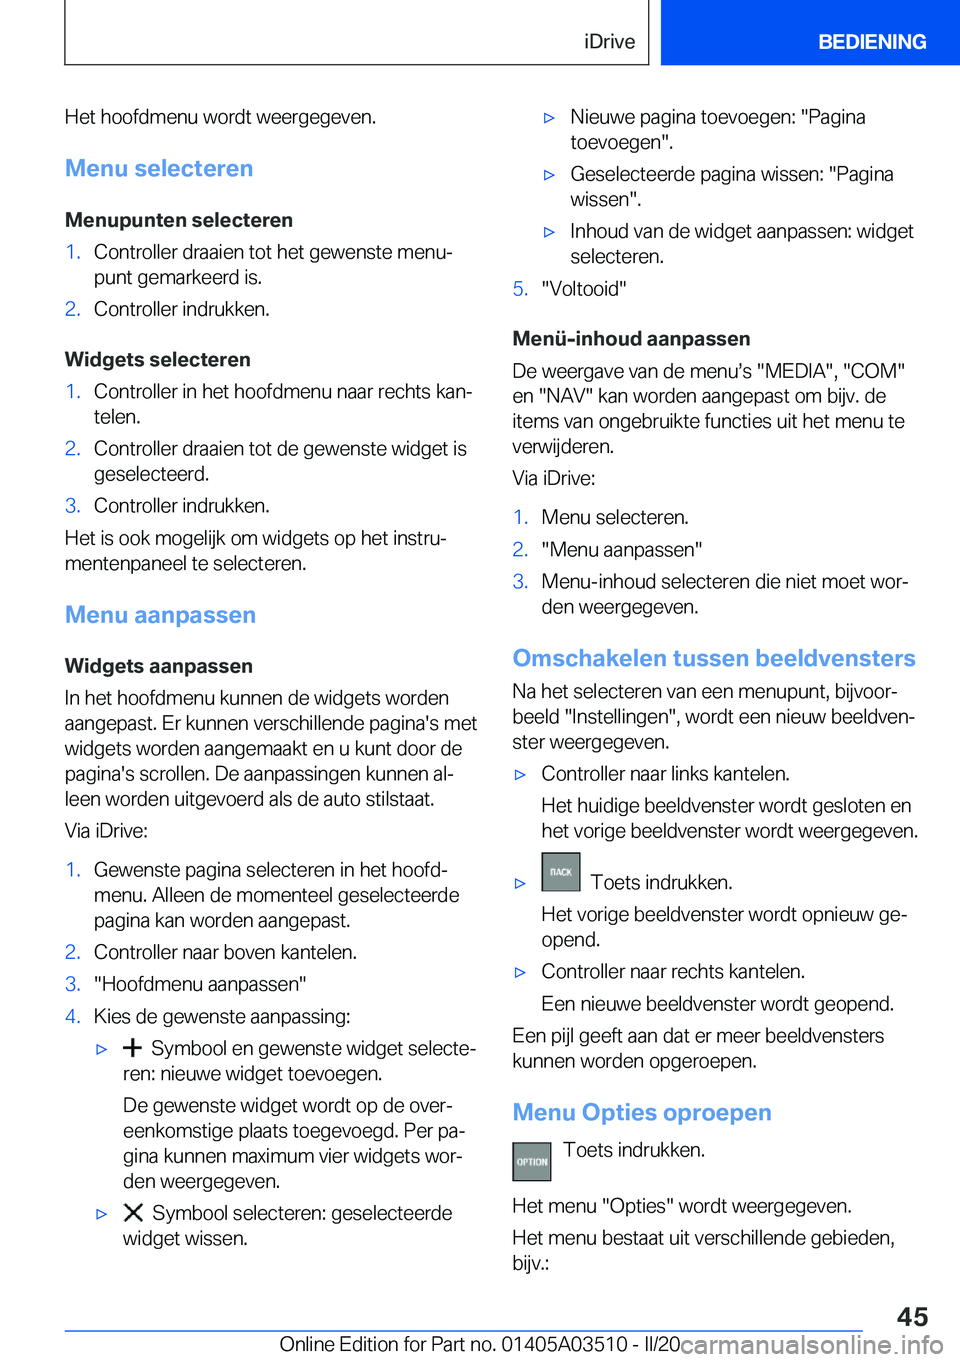 BMW X3 2020  Instructieboekjes (in Dutch) �H�e�t��h�o�o�f�d�m�e�n�u��w�o�r�d�t��w�e�e�r�g�e�g�e�v�e�n�.�M�e�n�u��s�e�l�e�c�t�e�r�e�n
�M�e�n�u�p�u�n�t�e�n��s�e�l�e�c�t�e�r�e�n�1�.�C�o�n�t�r�o�l�l�e�r��d�r�a�a�i�e�n��t�o�t��h�e�t��g�e�